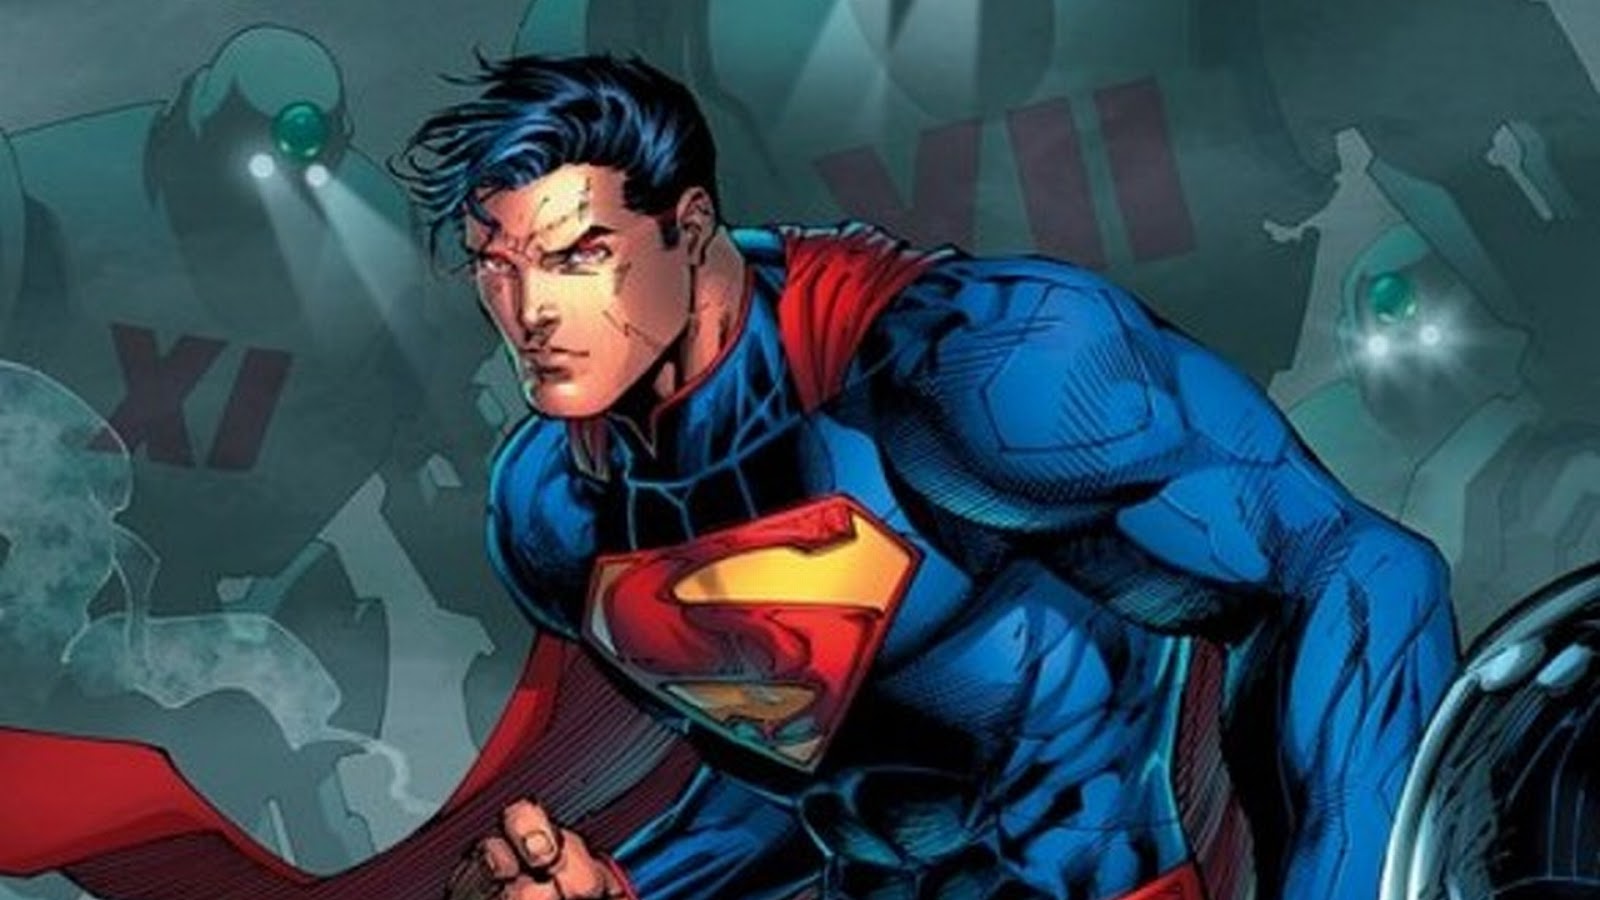 スーパーマンコミック壁紙,スーパーマン,スーパーヒーロー,架空の人物,フィクション,ヒーロー